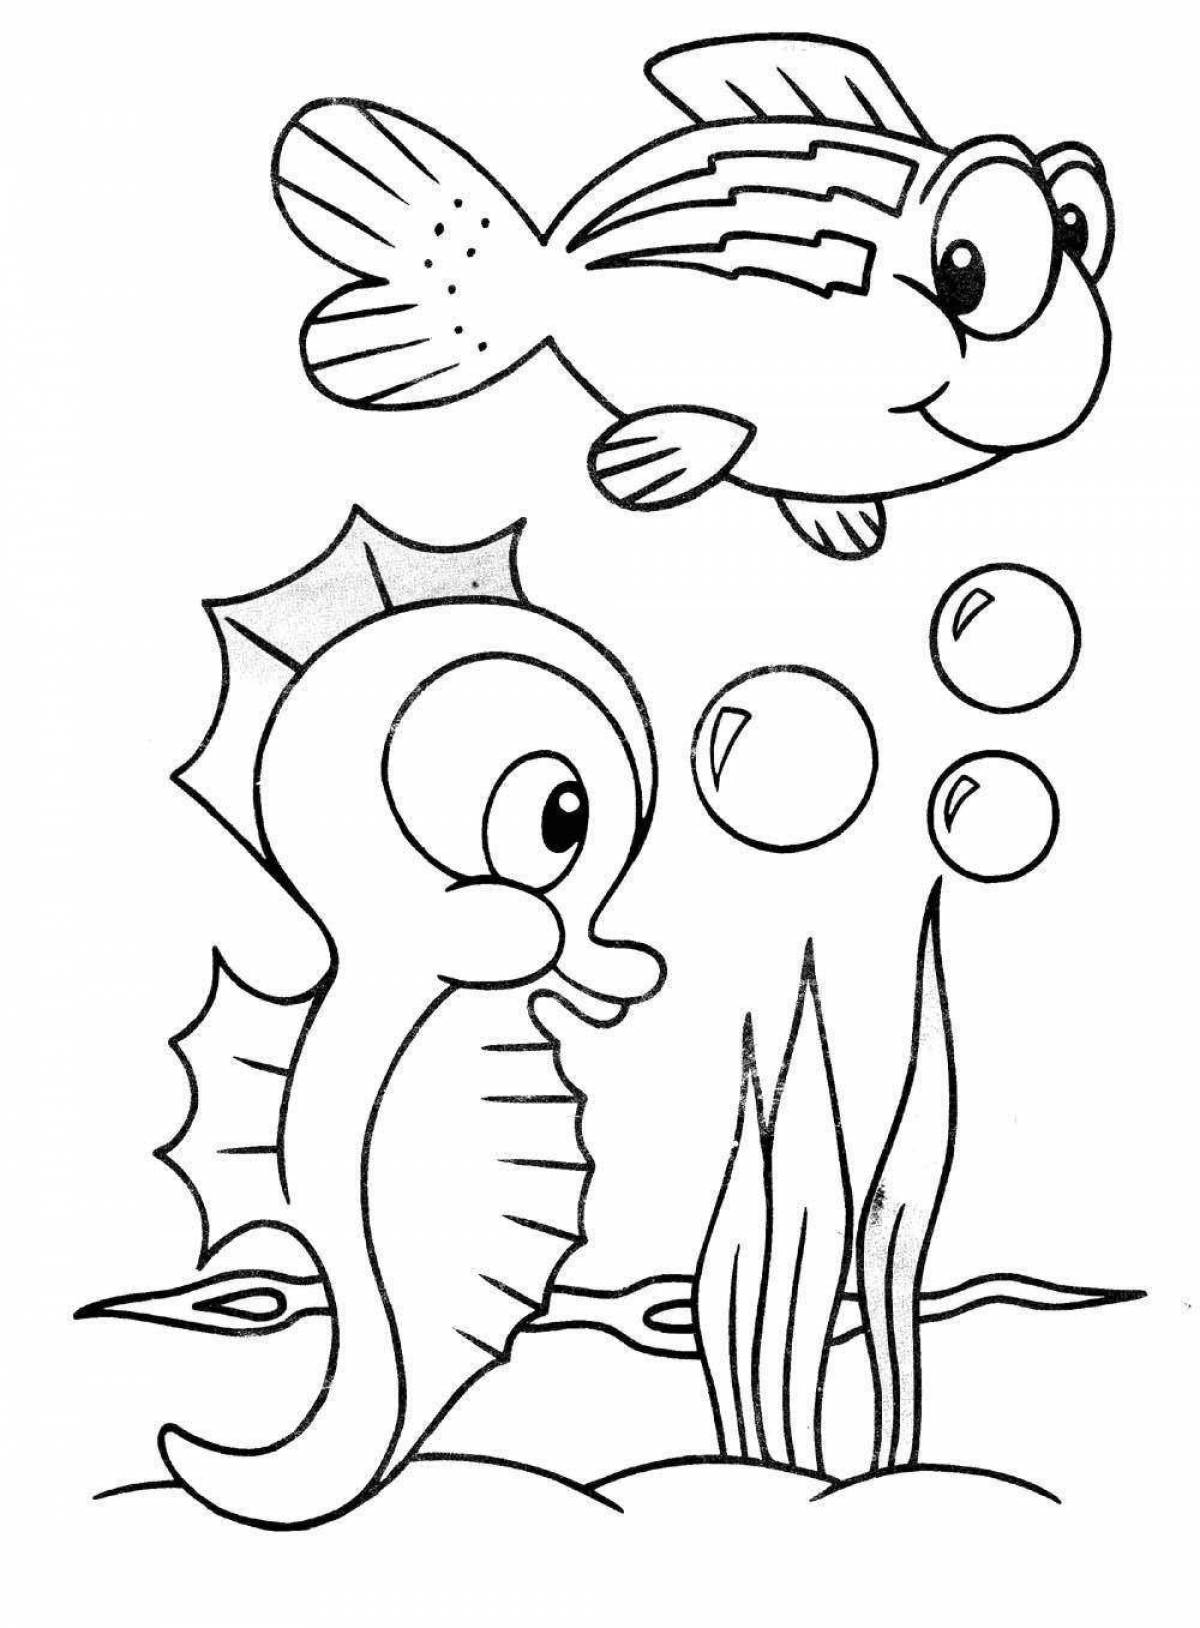 Великолепная рыбка-раскраска для детей 5-6 лет